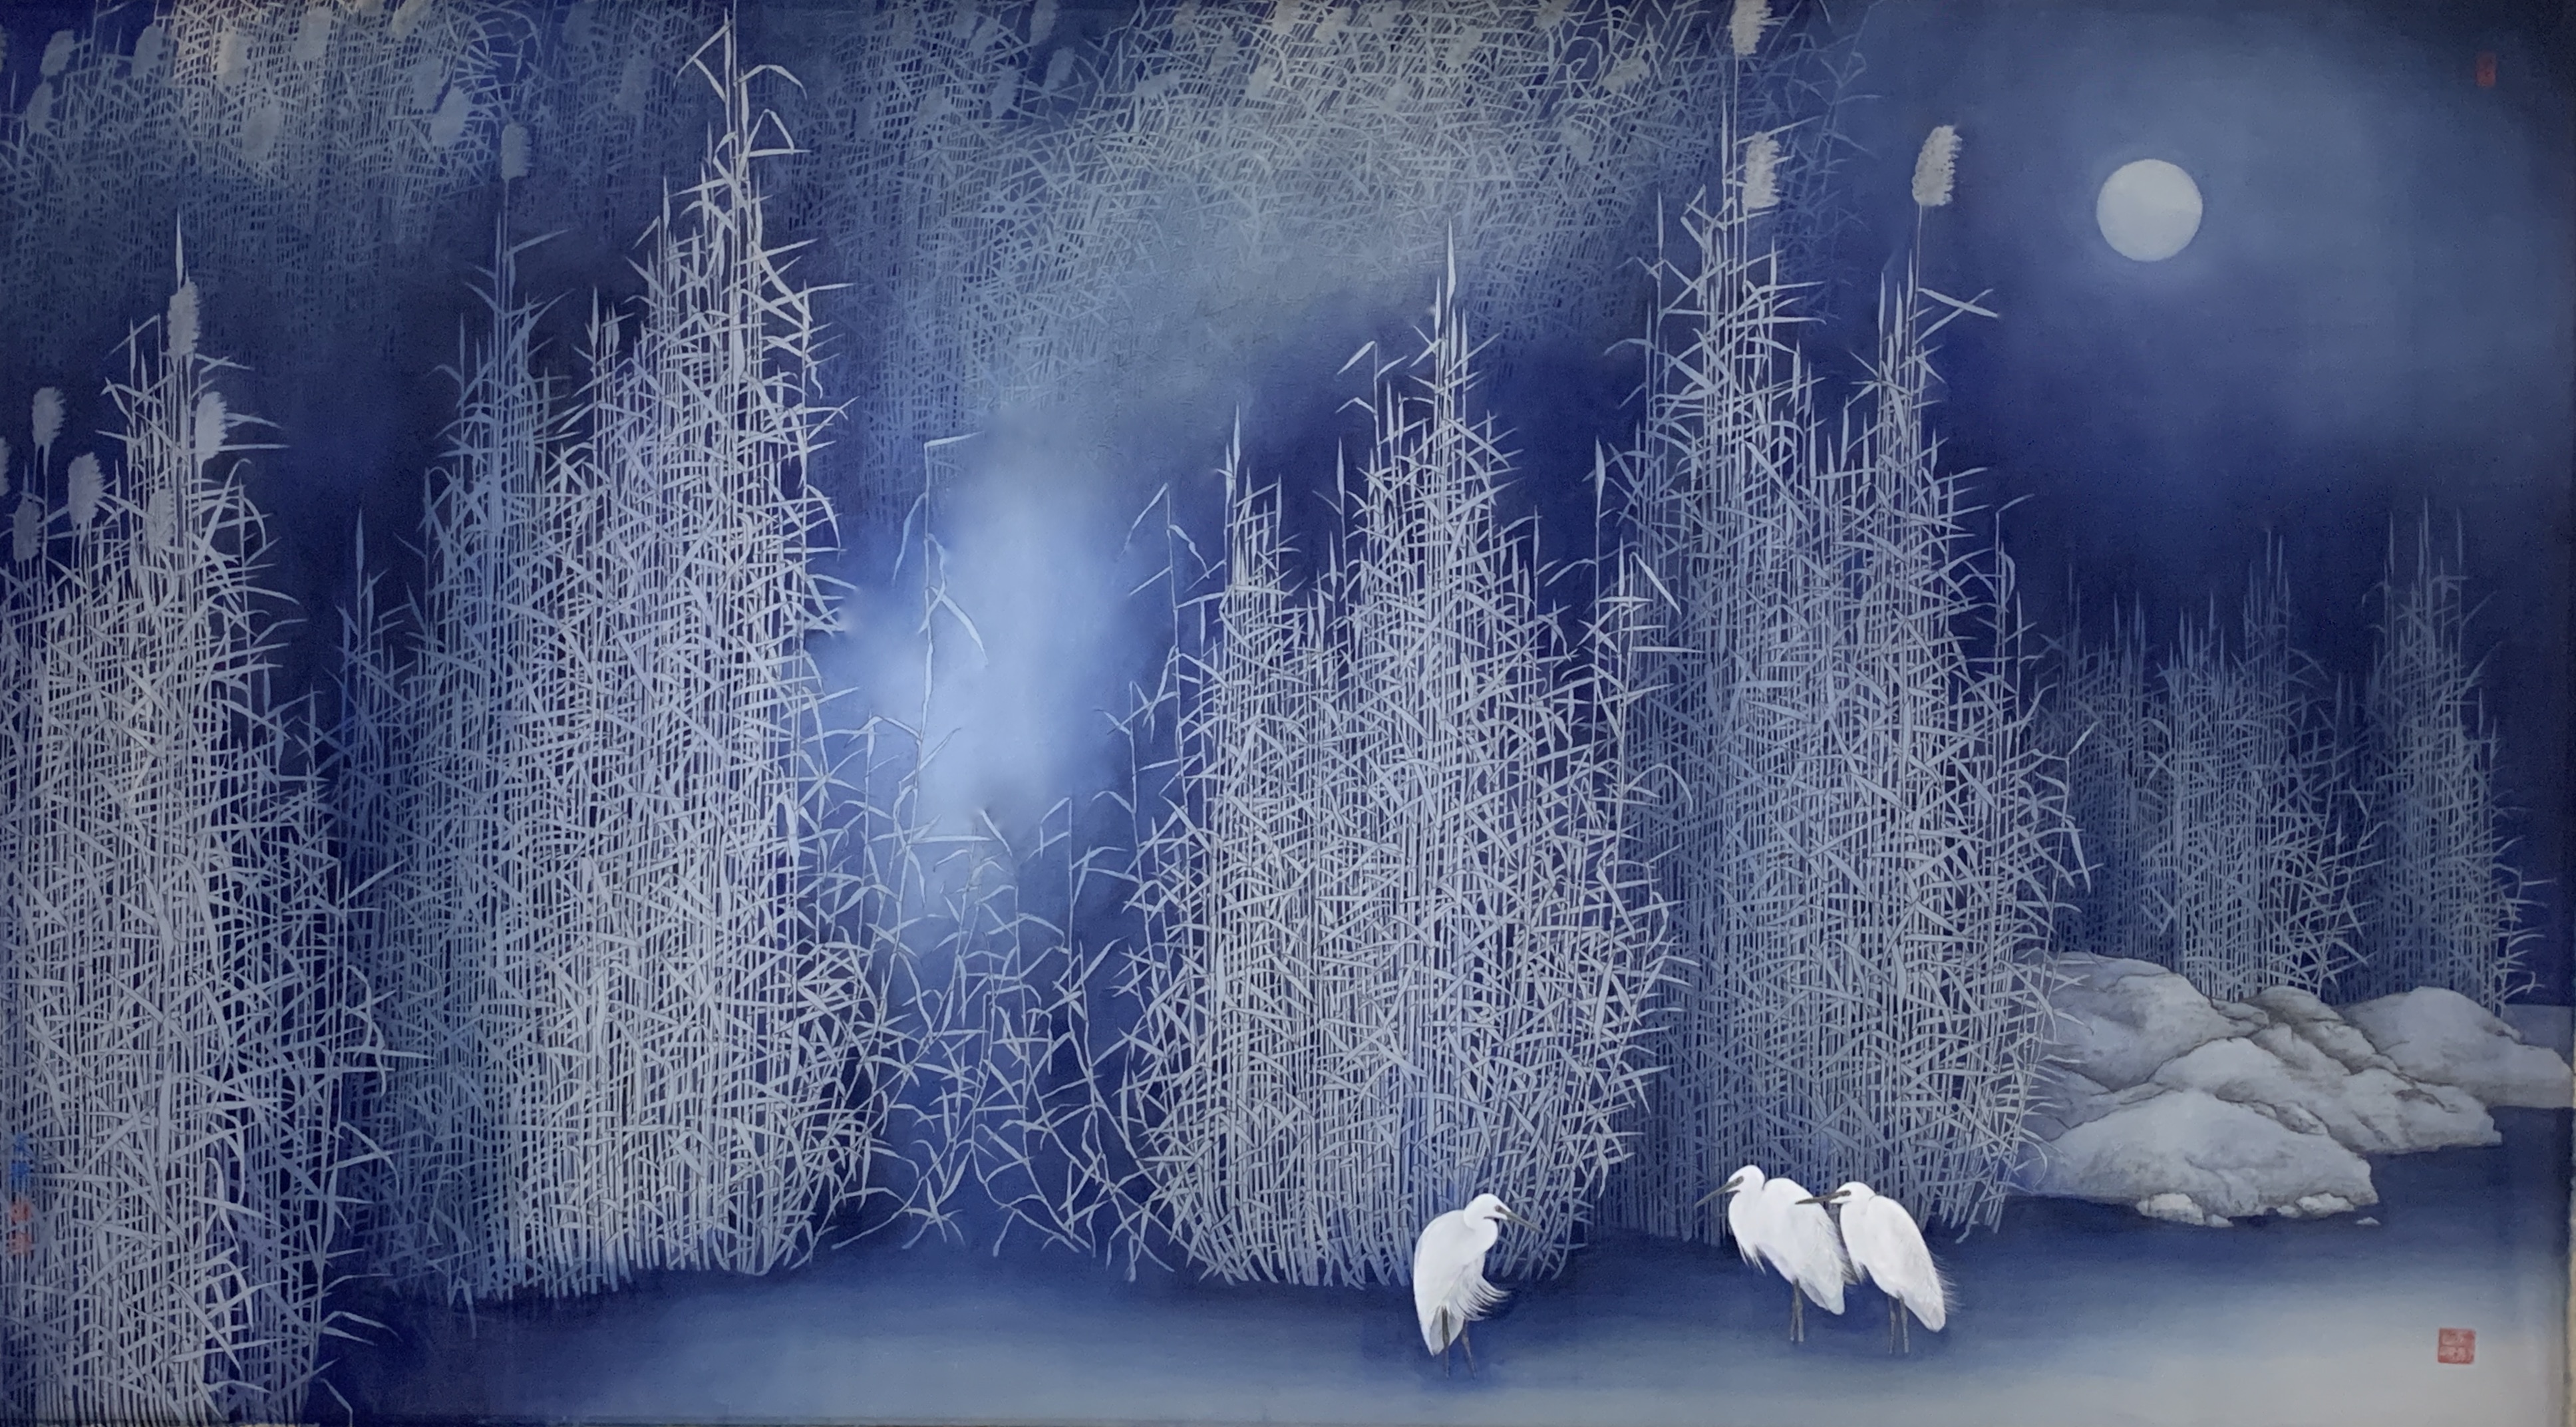 許文德，《蘆荻夜色》，絹本岩彩，181x100 cm